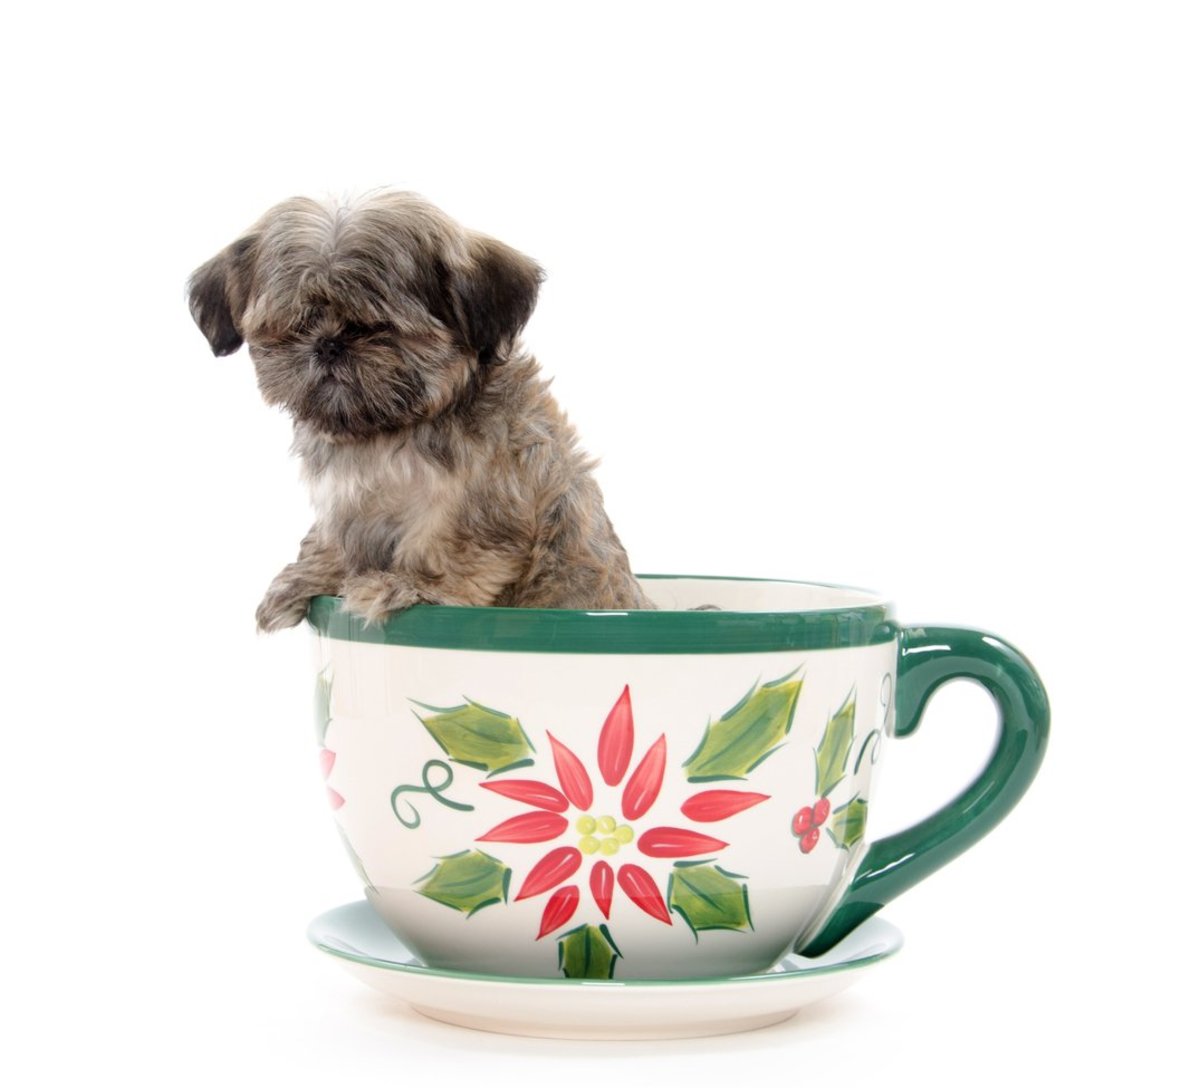 how big do teacup puppies grow